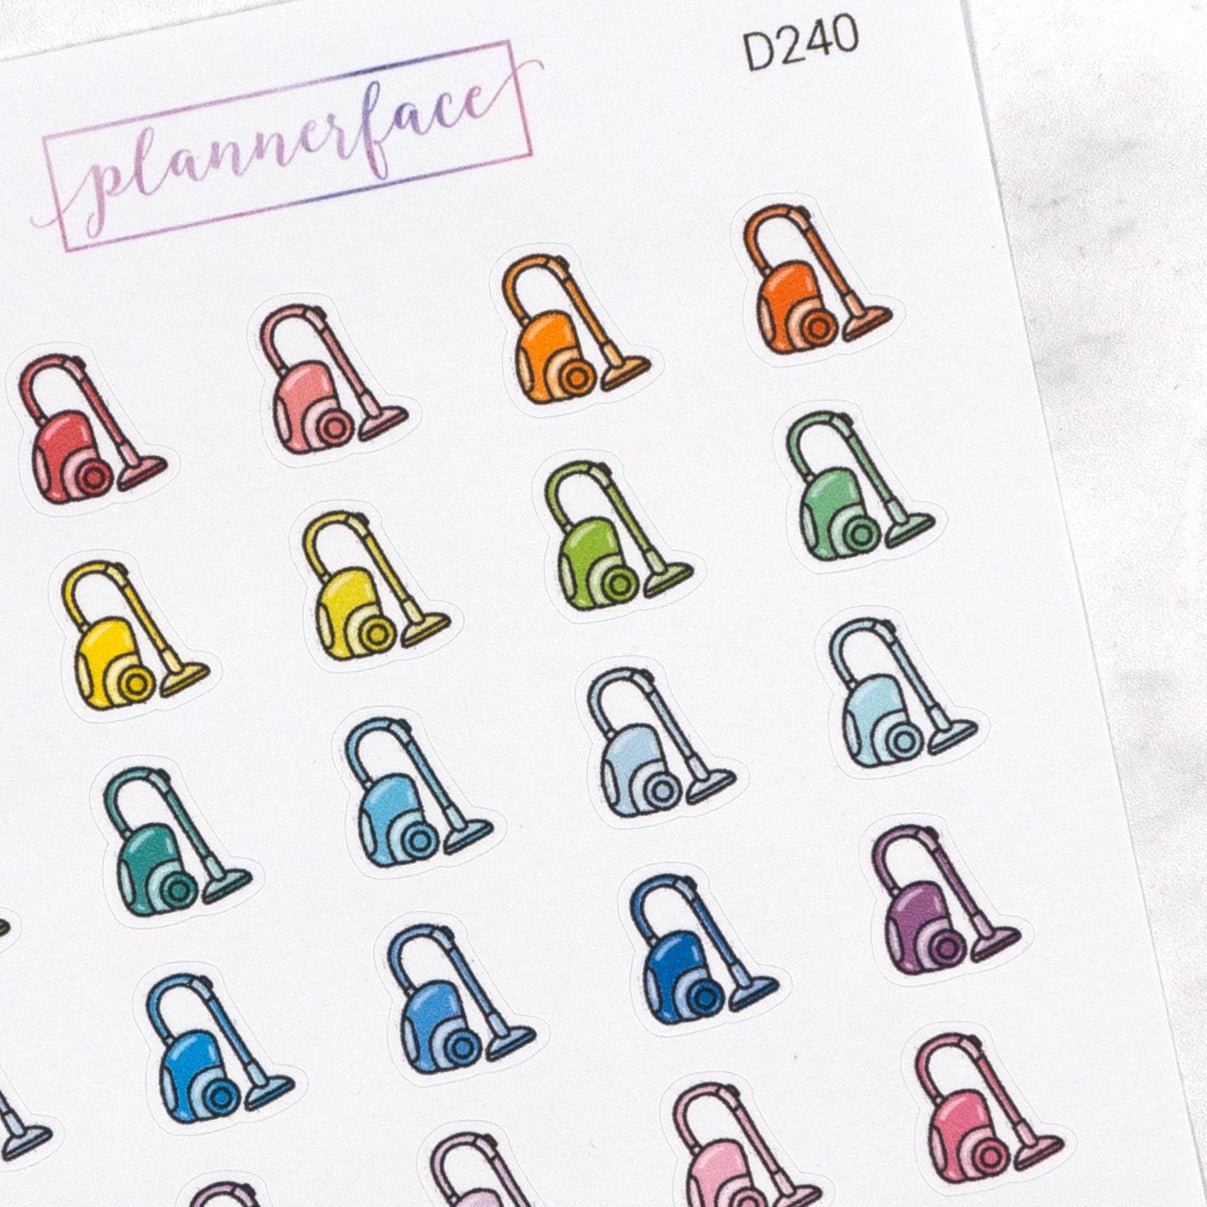 Vacuum Multicolour Doodles by Plannerface